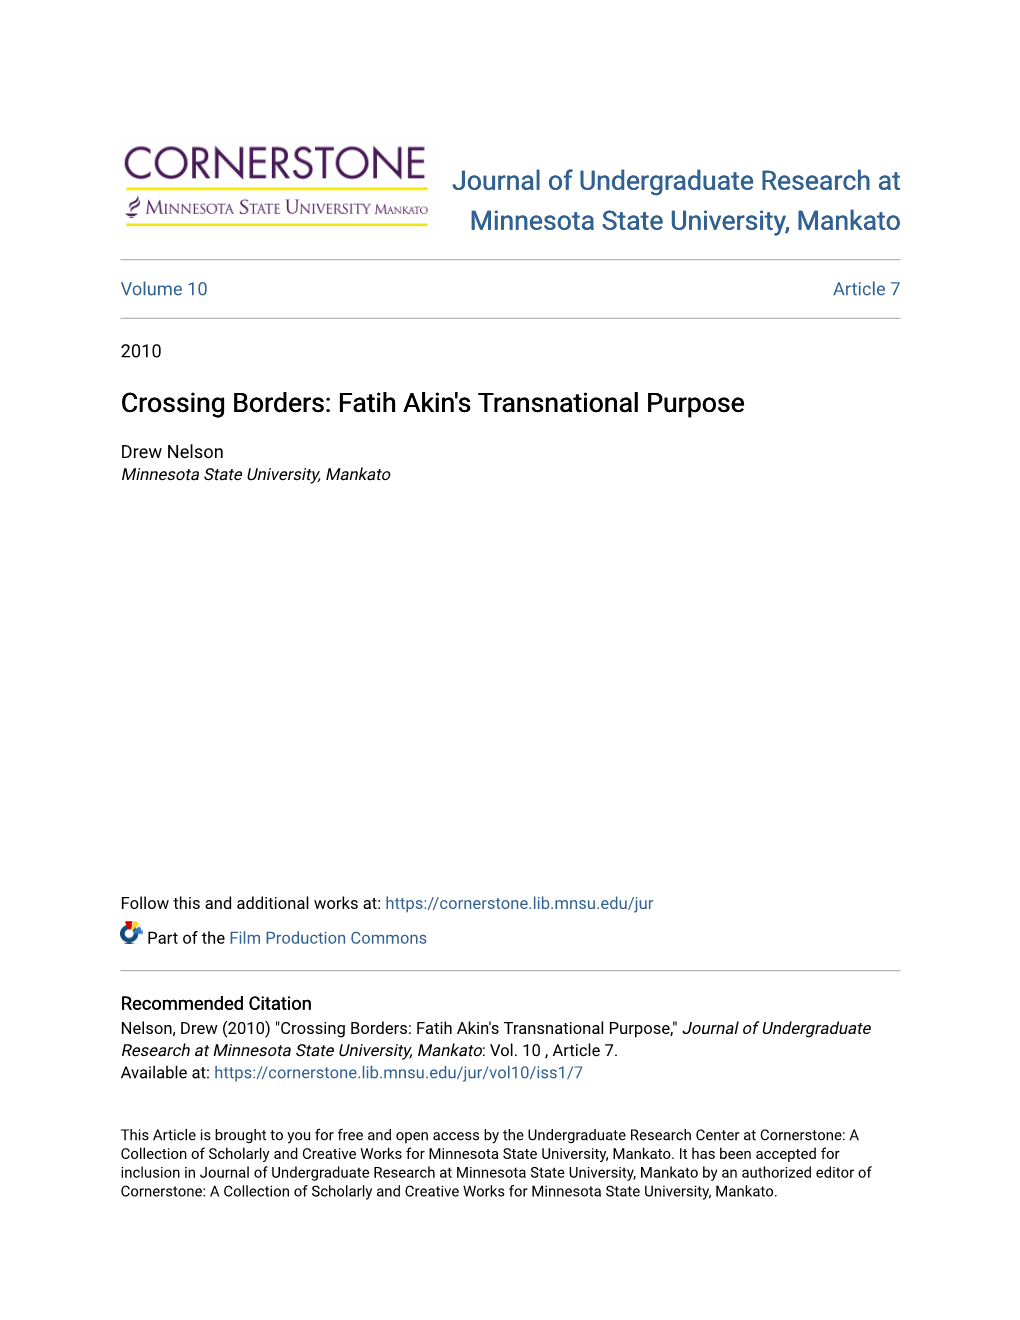 Crossing Borders: Fatih Akin's Transnational Purpose